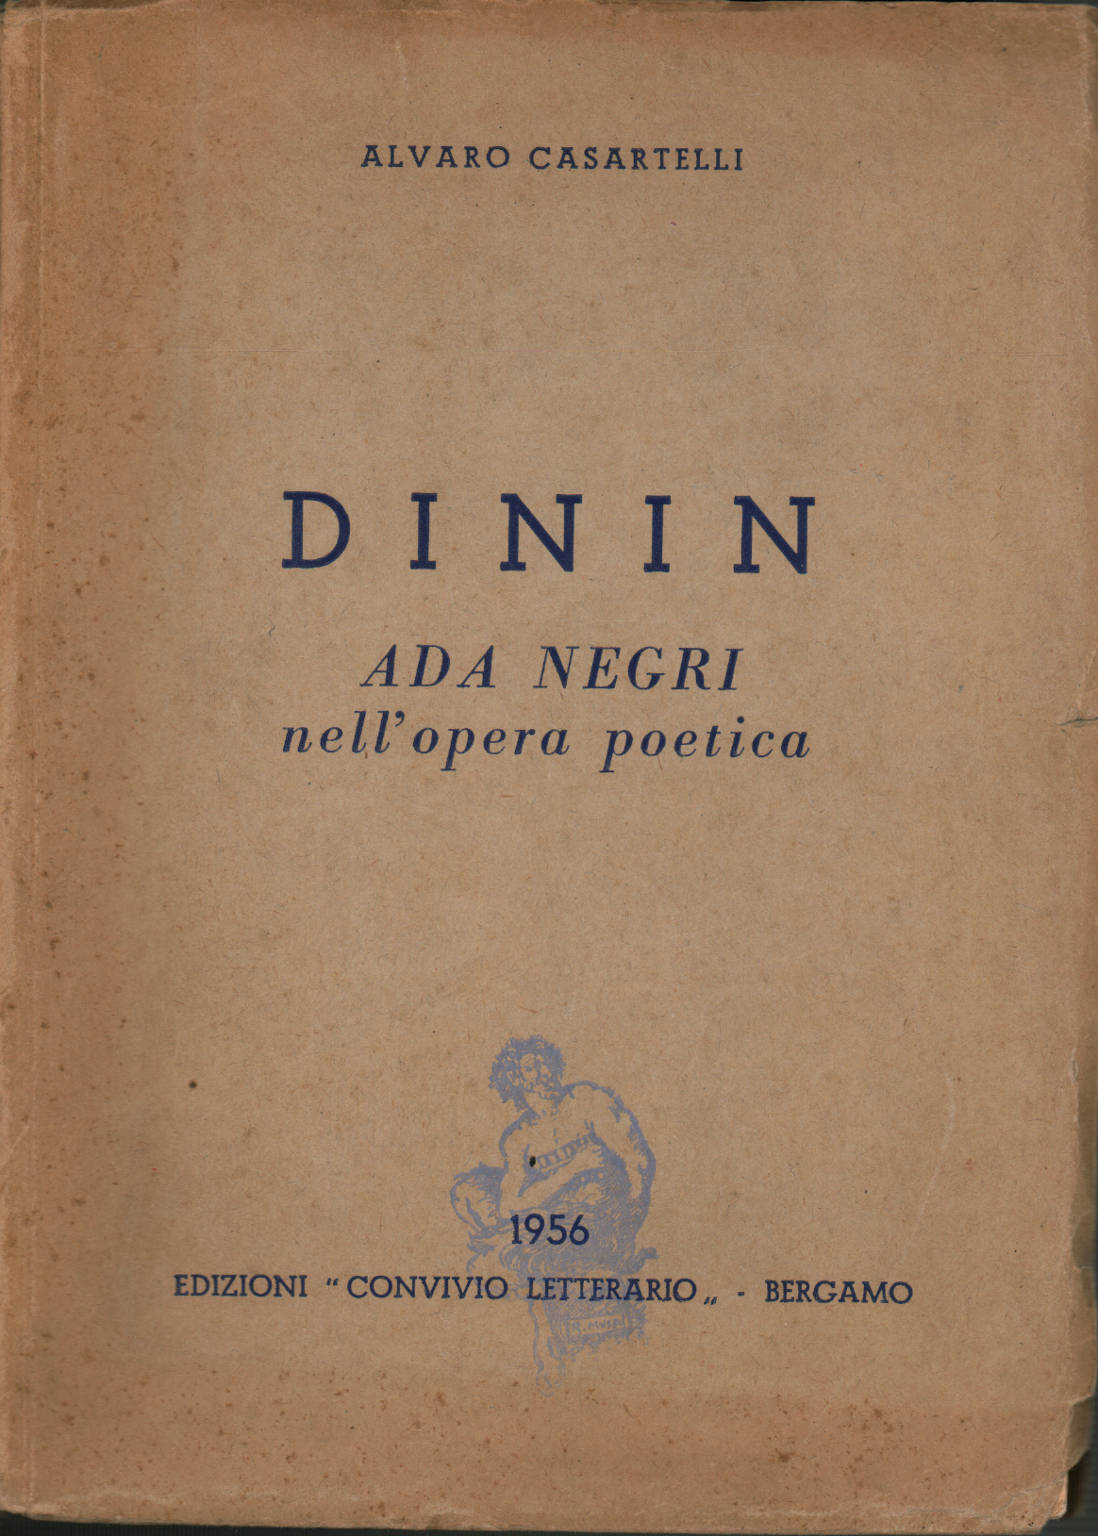 Cenando. Ada Negri en su obra poética, s.a.